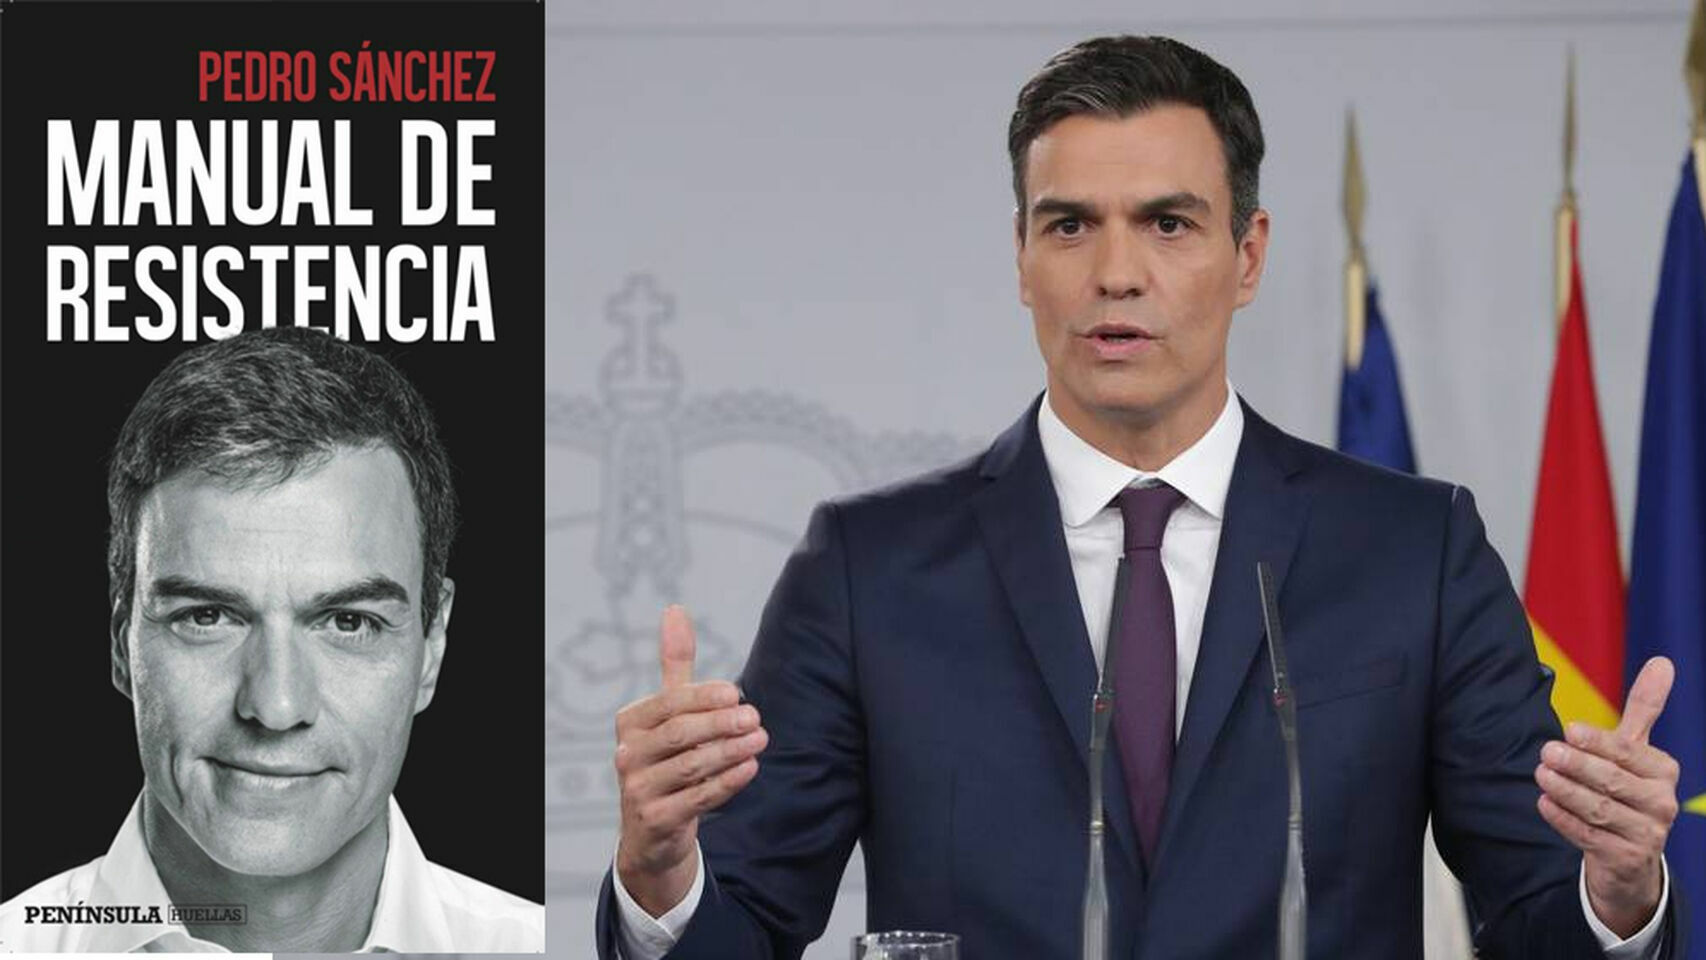 Pedro Sánchez y la portada de su libro.